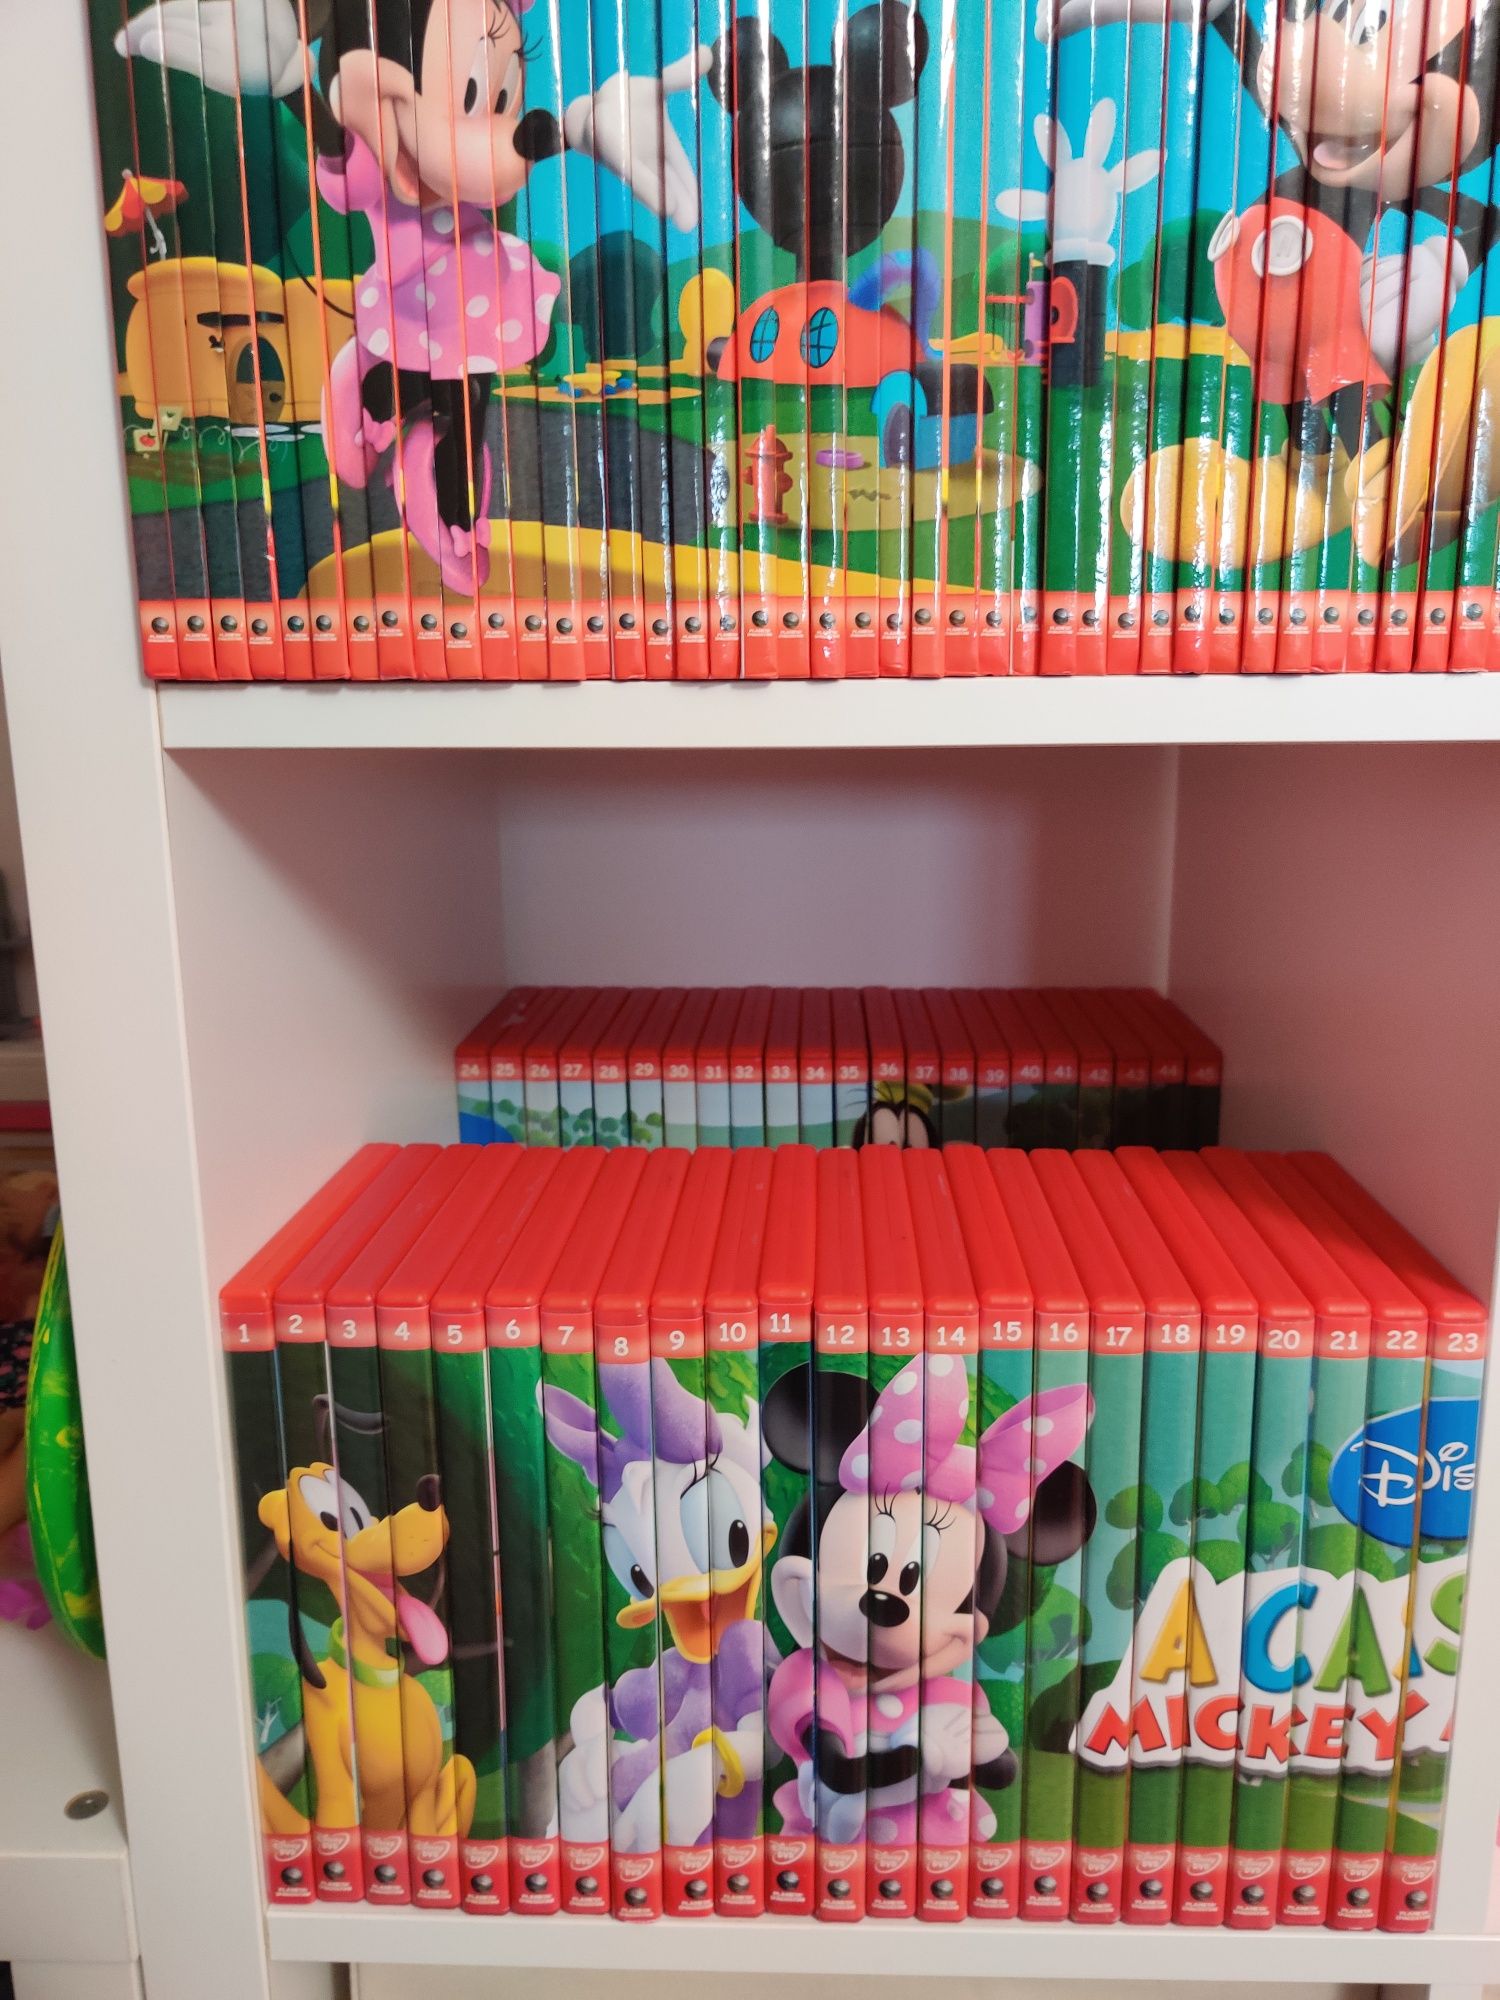 Livros e DVD's "A casa do Mickey Mouse"